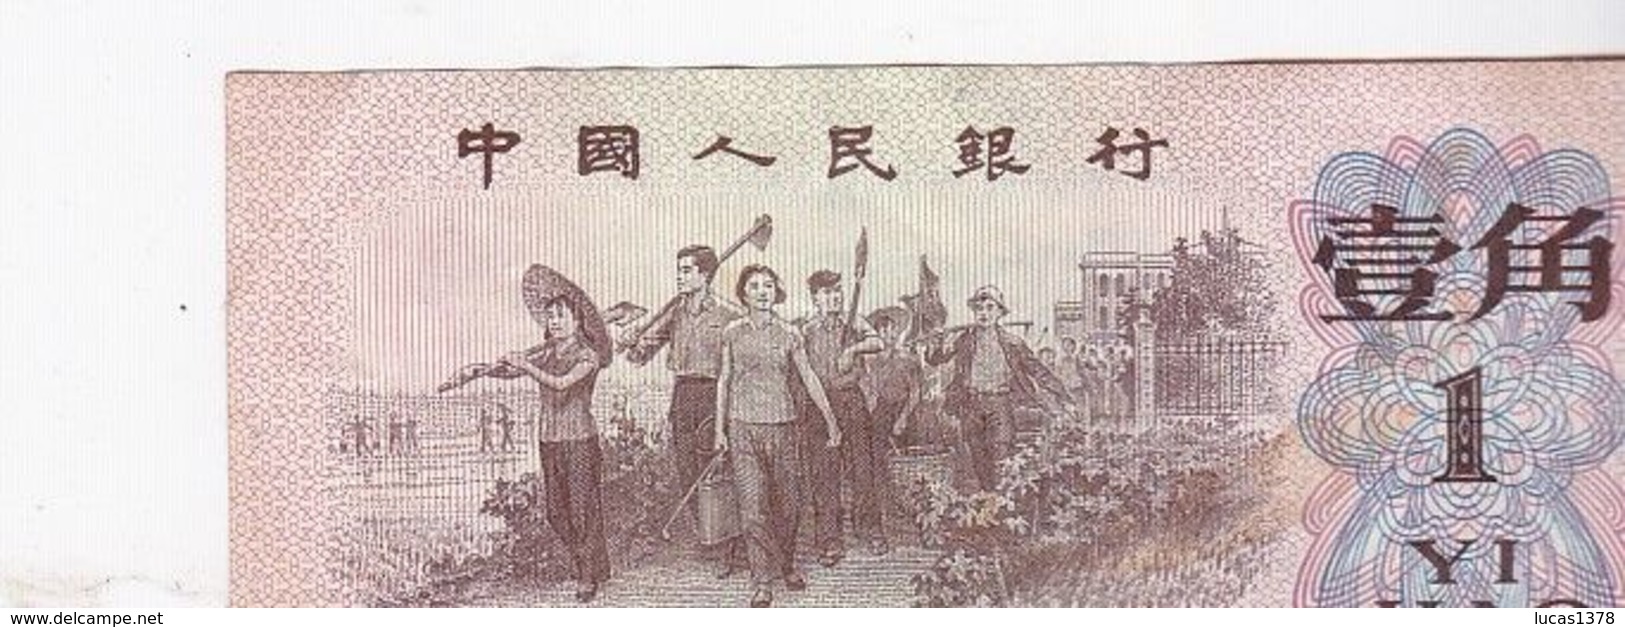 Billet De Banque Chine Zhongguo Renmin Yinhang - 1 Yi Jiao - 1962 / NEUF - Chine